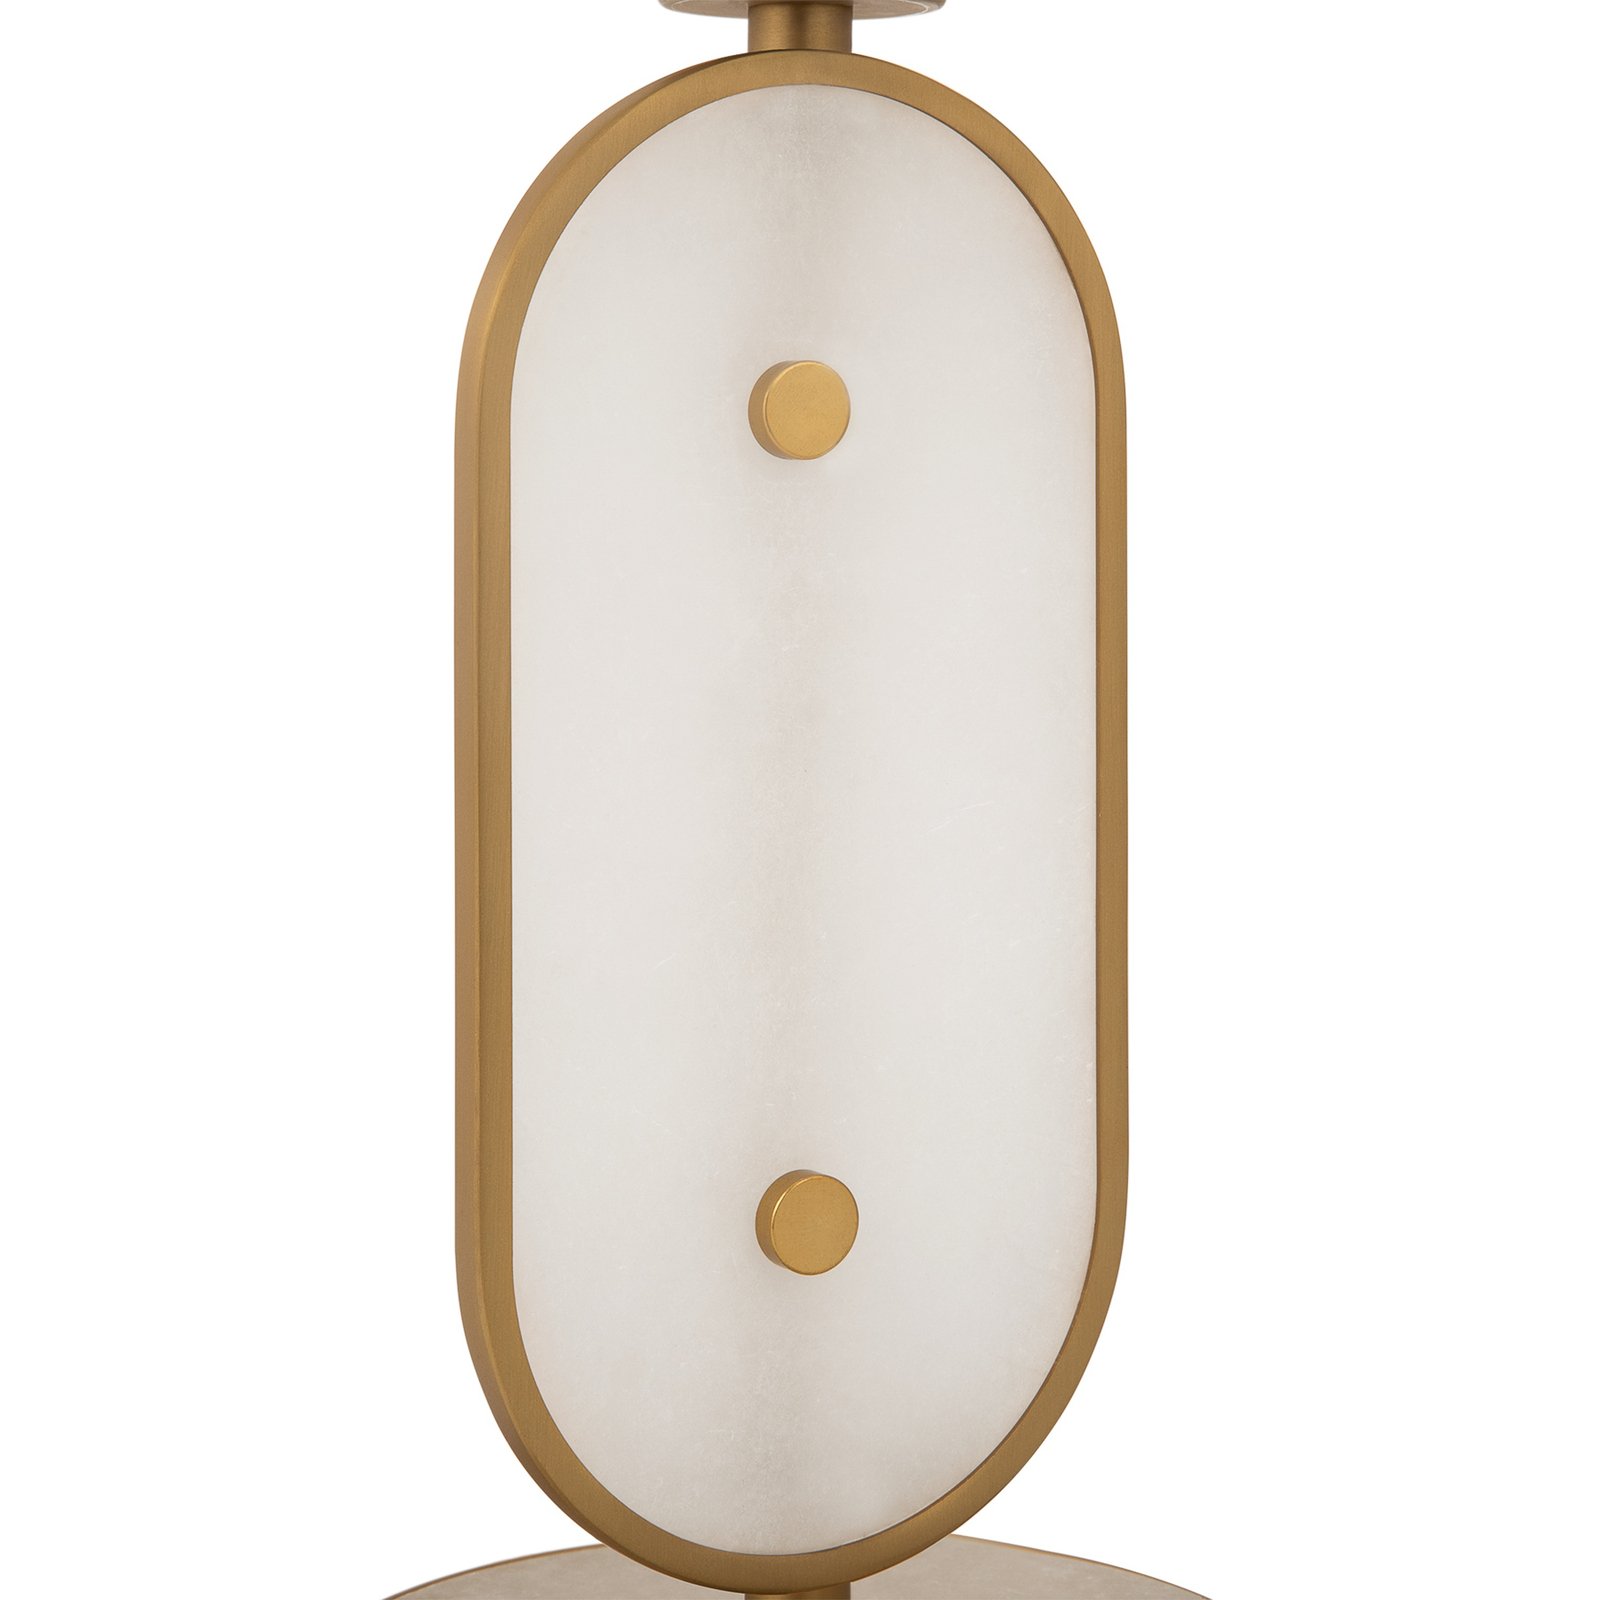 Lampa stołowa Maytoni Marmo, kolor złoty/naturalny kamień